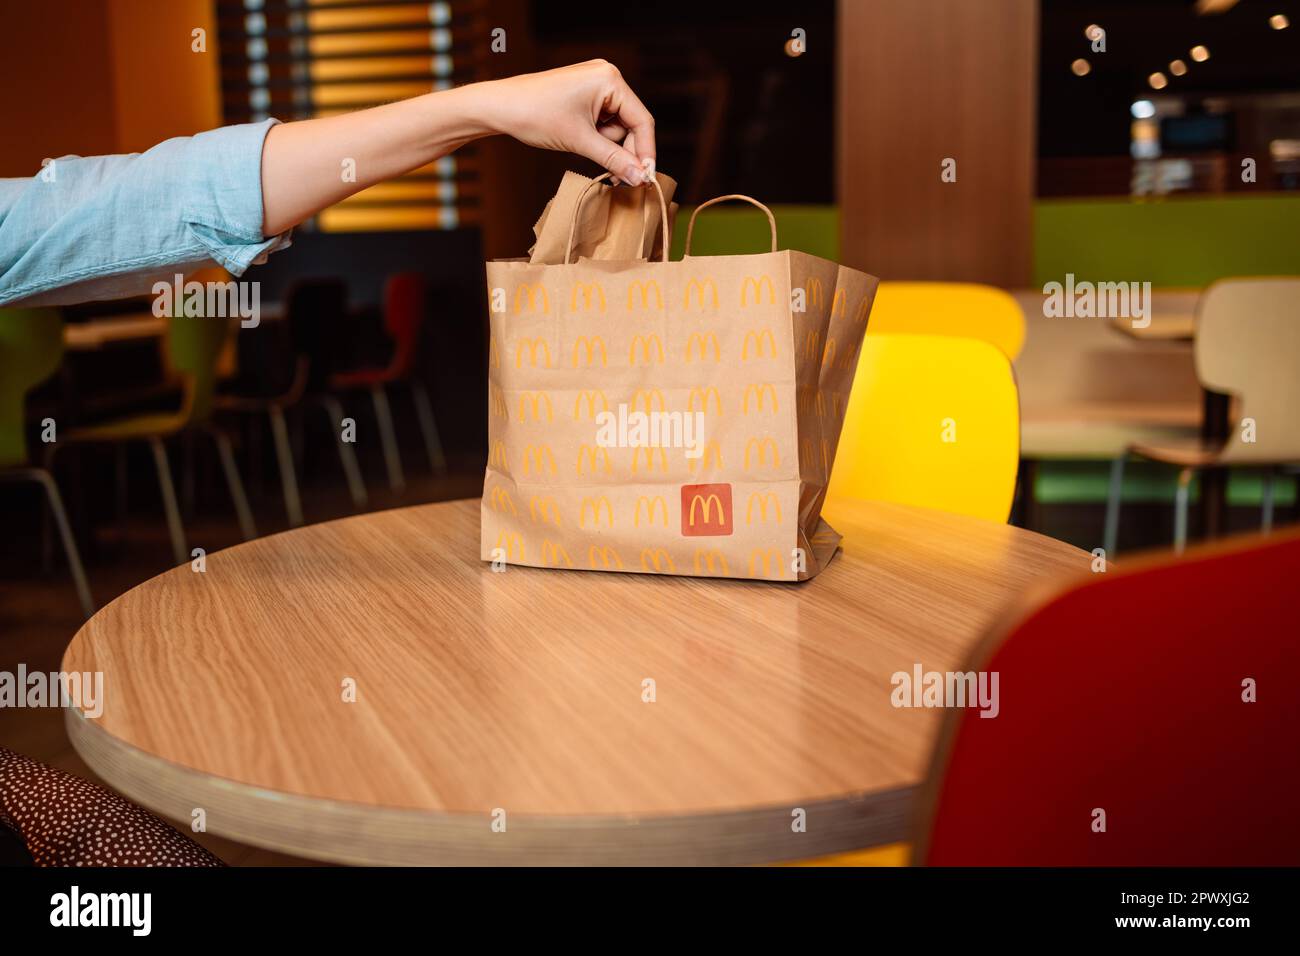 Valence, Espagne - 16 octobre 2022: Emballage de sac de papier conception pour le service de livraison appartenant à la restauration rapide restaurant McDonalds sur une table à la ville café Banque D'Images